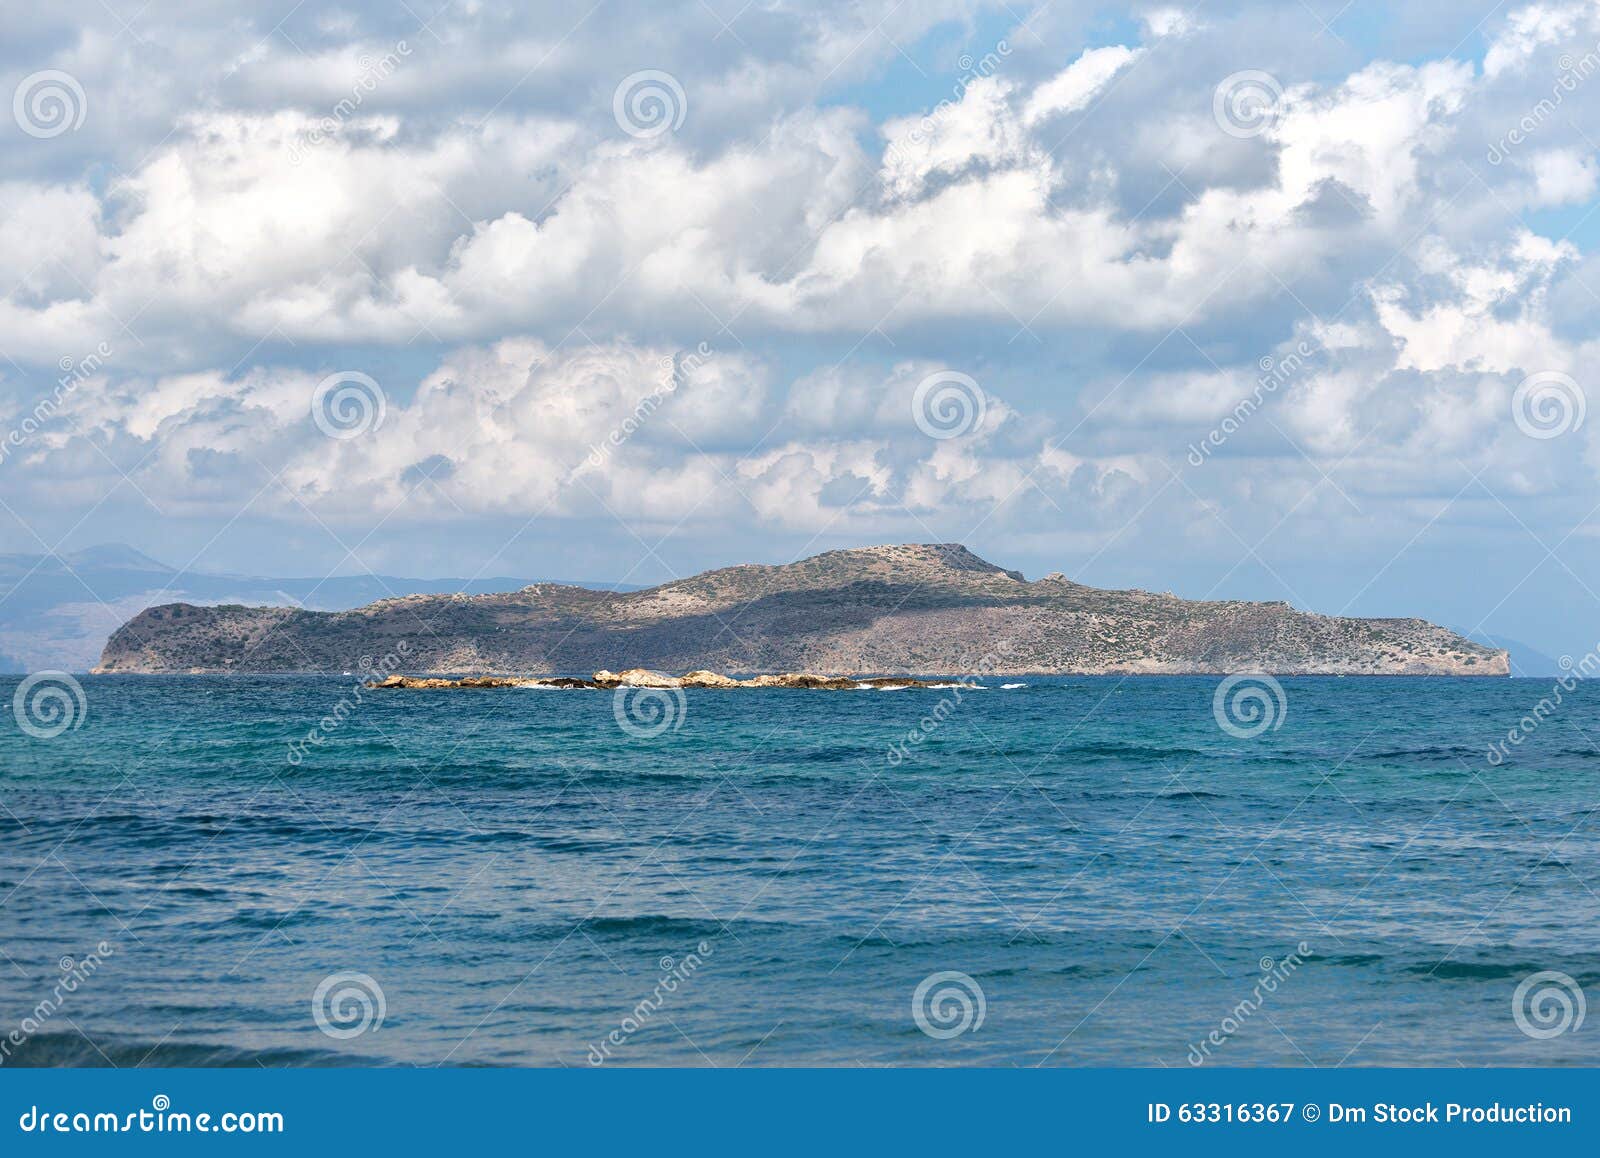 Agioi Theodoroi. stock image. Image of peaceful, cliff - 63316367